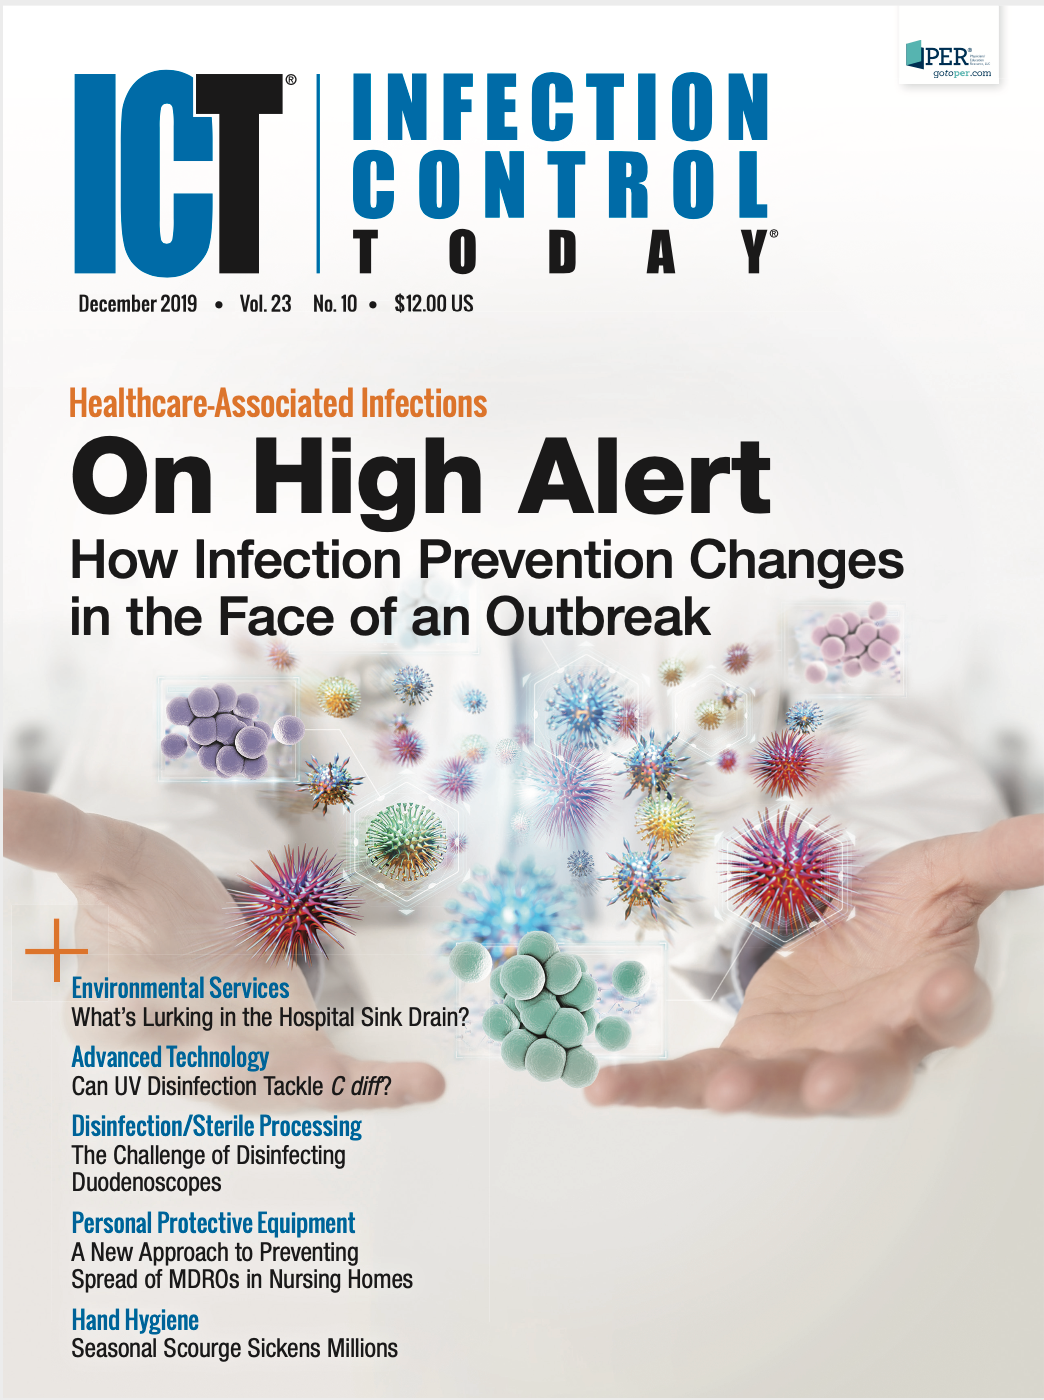  Infection Control Today, Dec 2019 (Vol. 23 No. 10) 